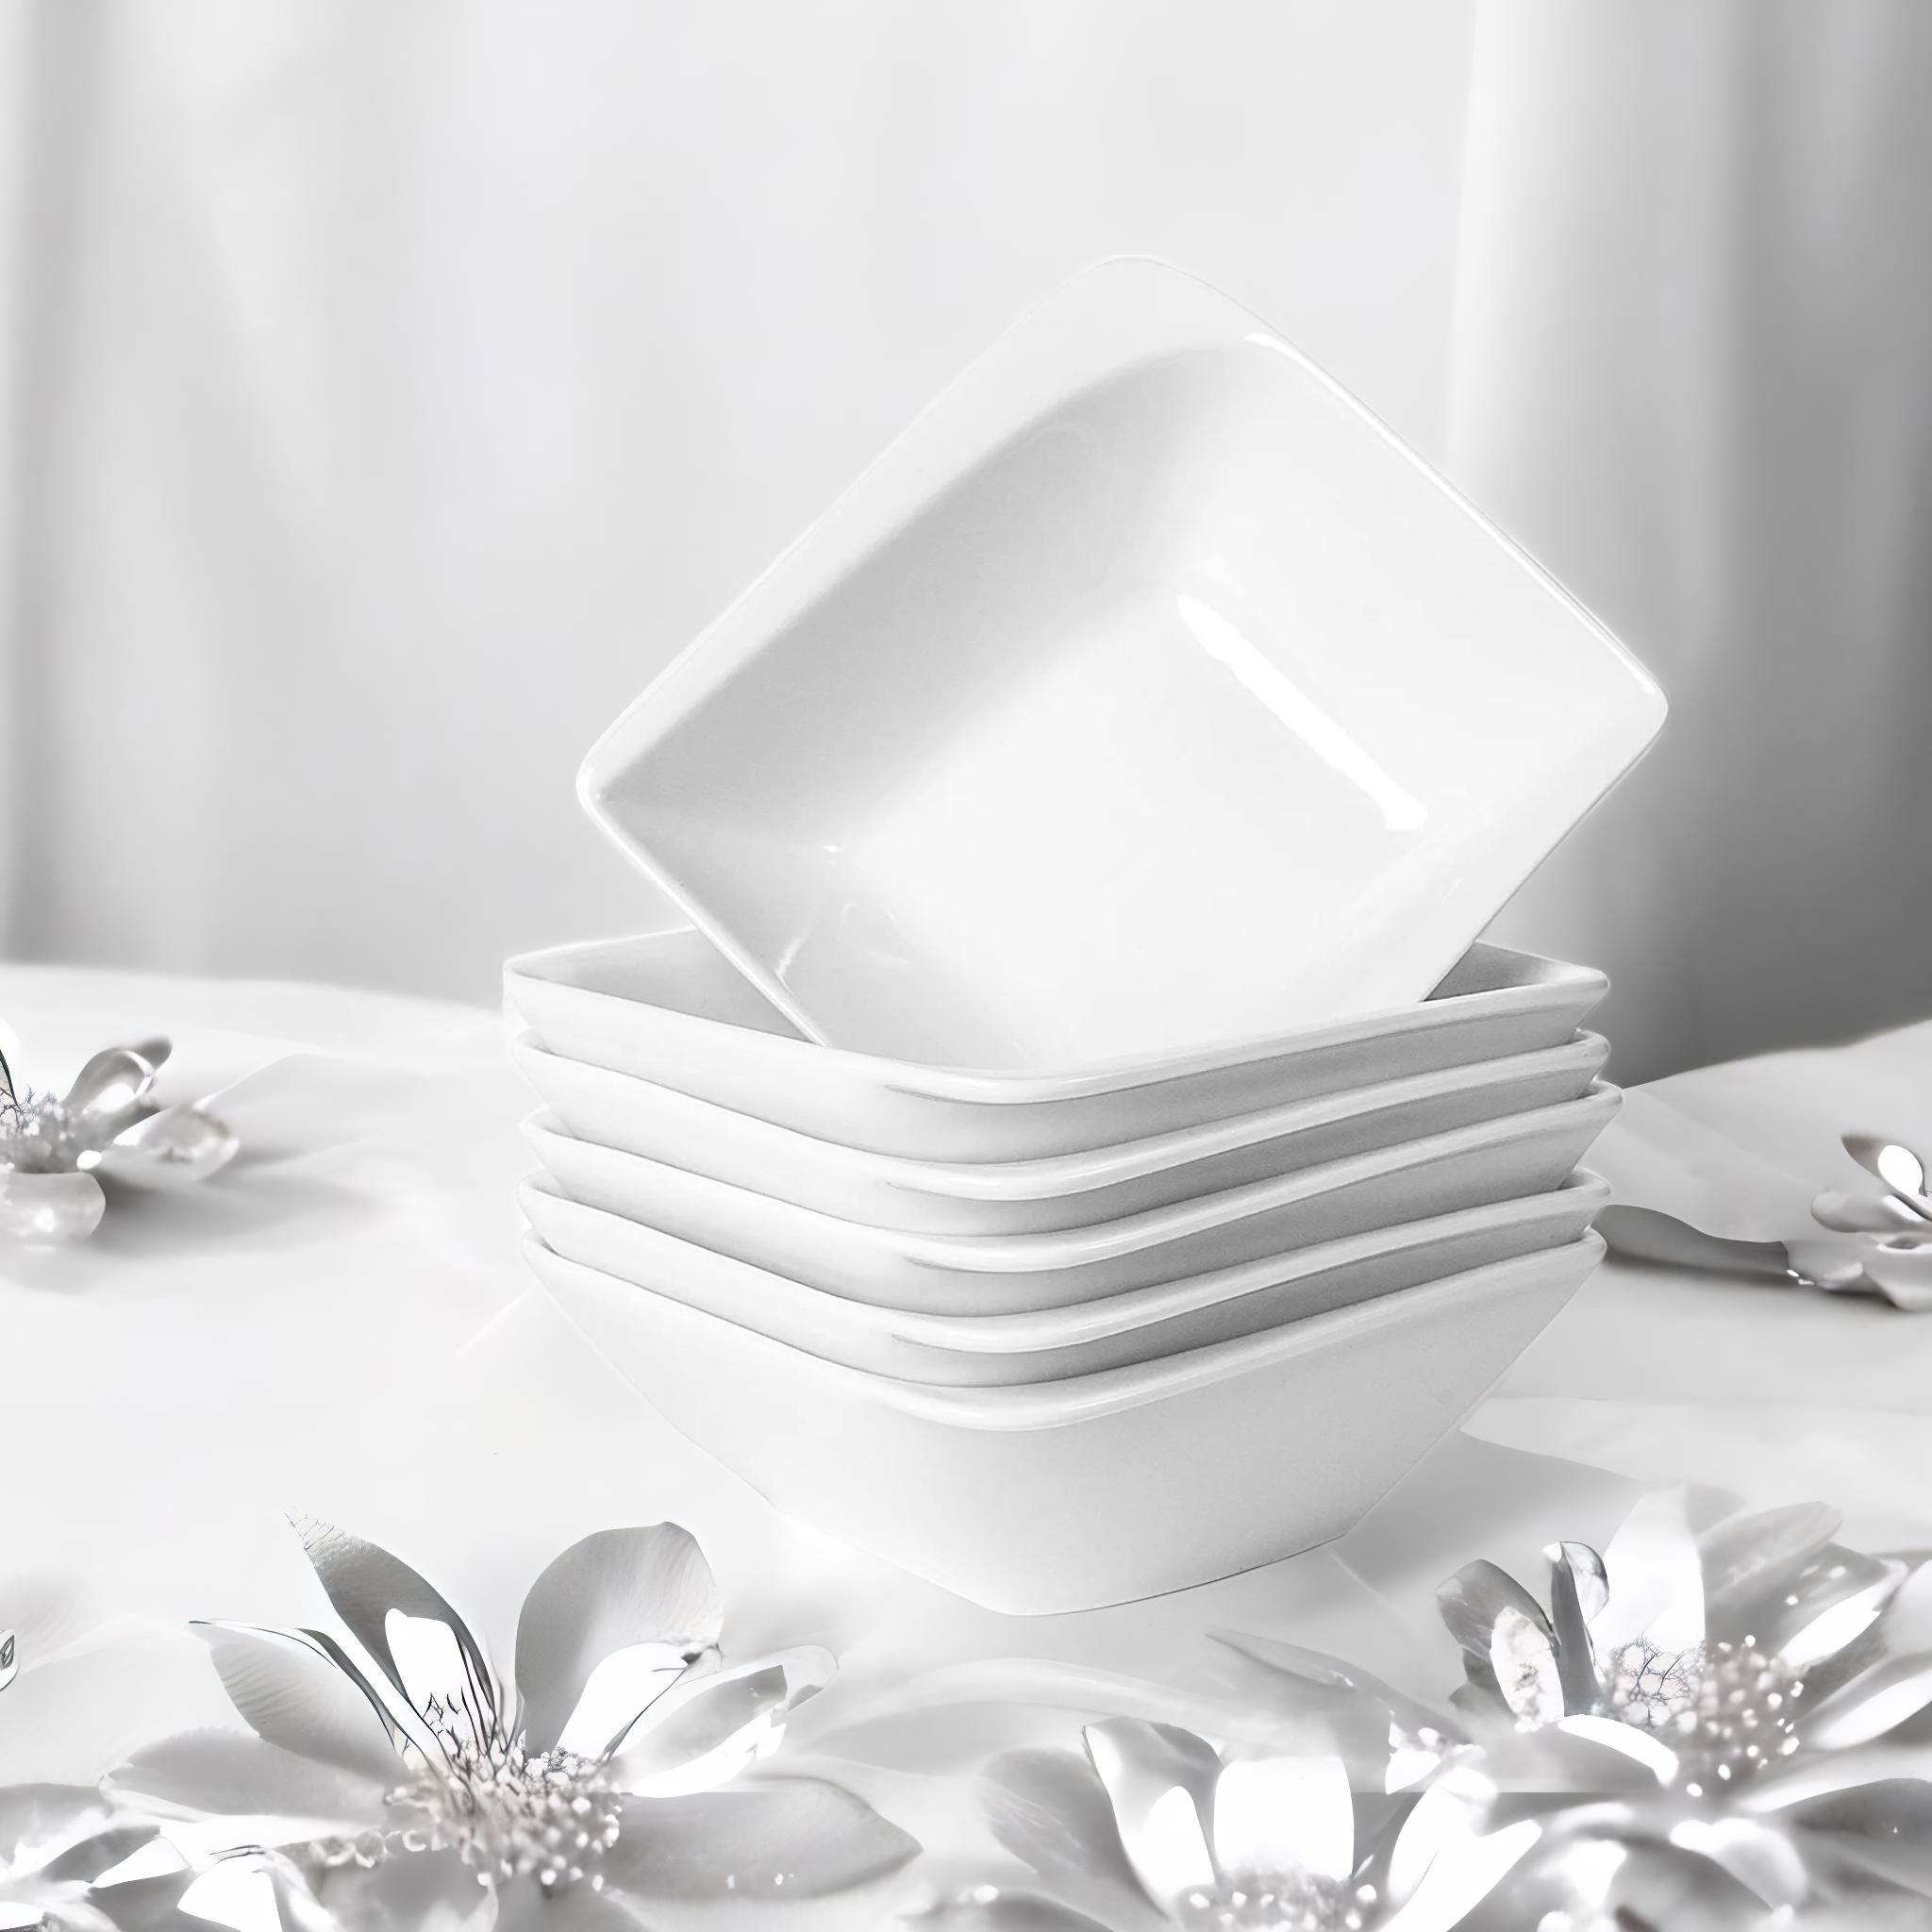 White Large Soup Bowls for Eating Set of 6 - Square 36oz Deep Ceramic Salad Cereal Bowl, 7 inch Porcelain Serving Bowls for Kitchen Ramen Rice, Dishwa